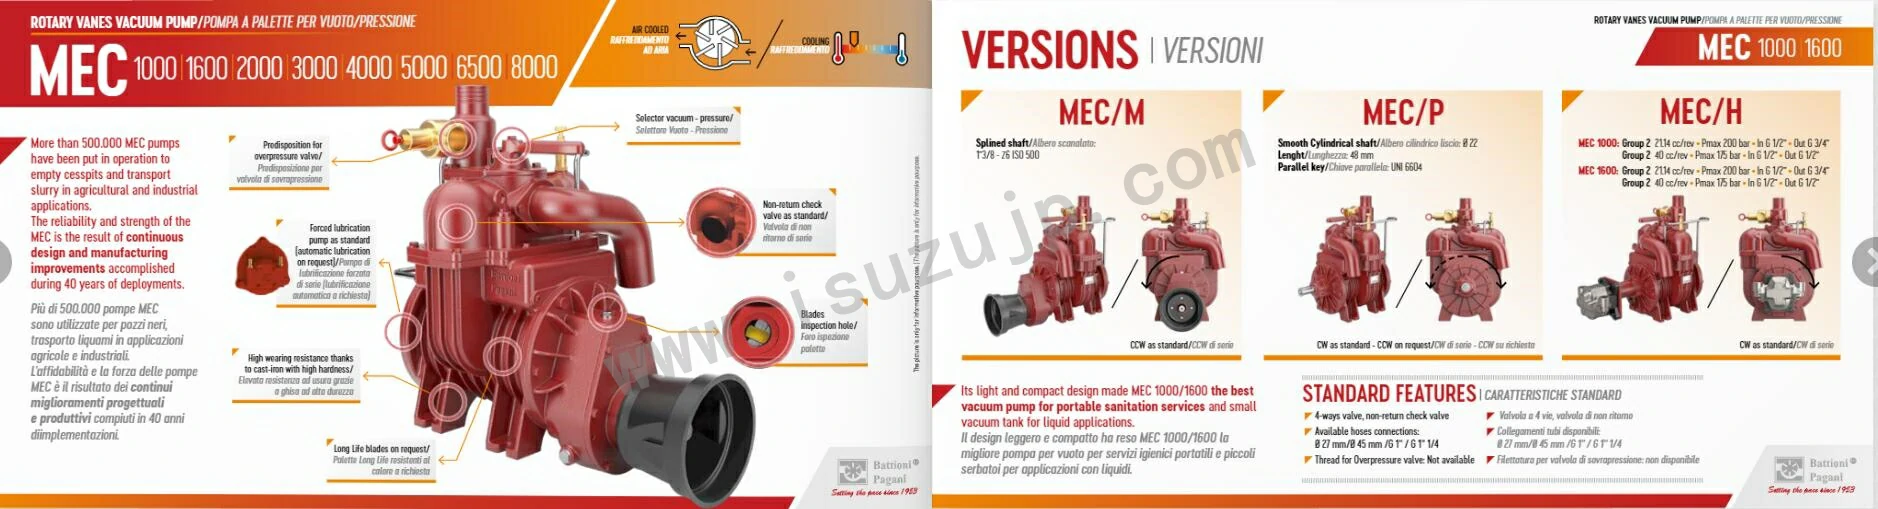 BATTIONI PAGANI MEC 1000-8000 Vacuum Pump Instructions 1